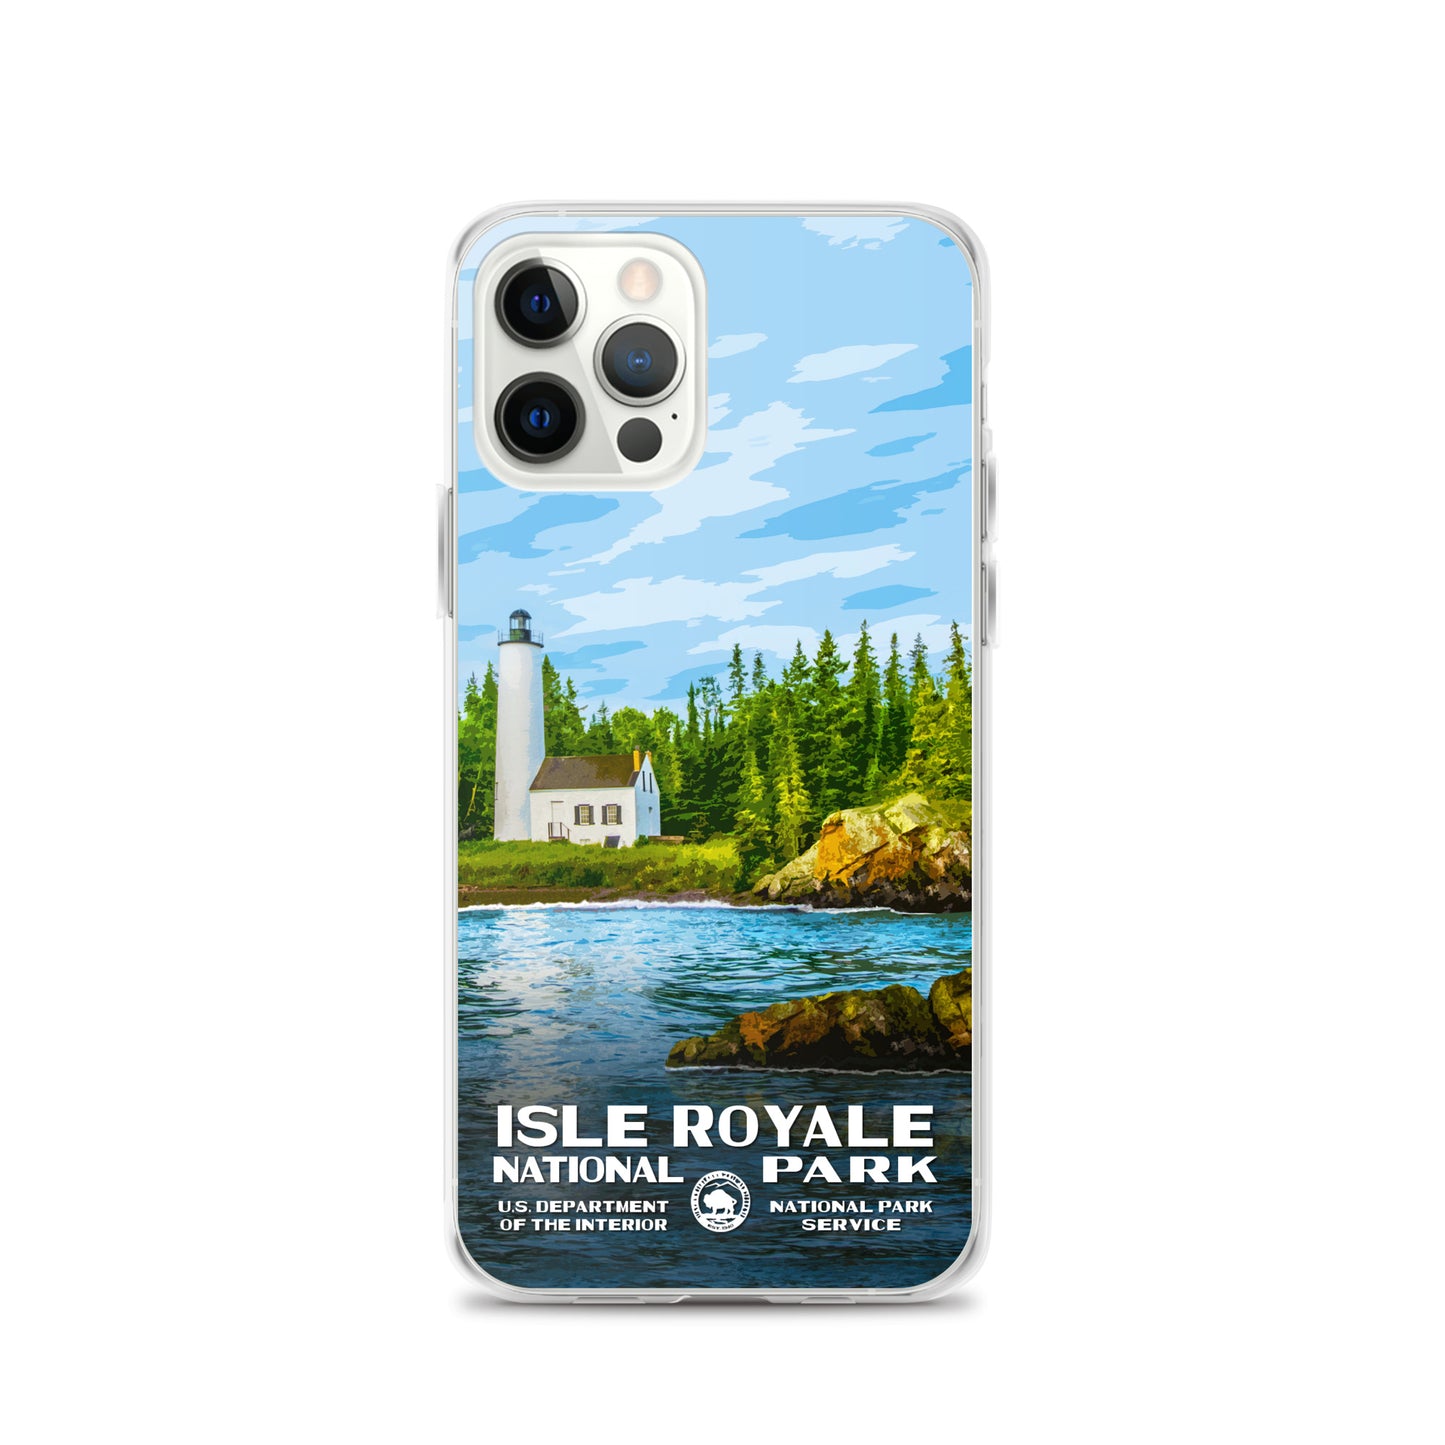 Isle Royale National Park iPhone® Case